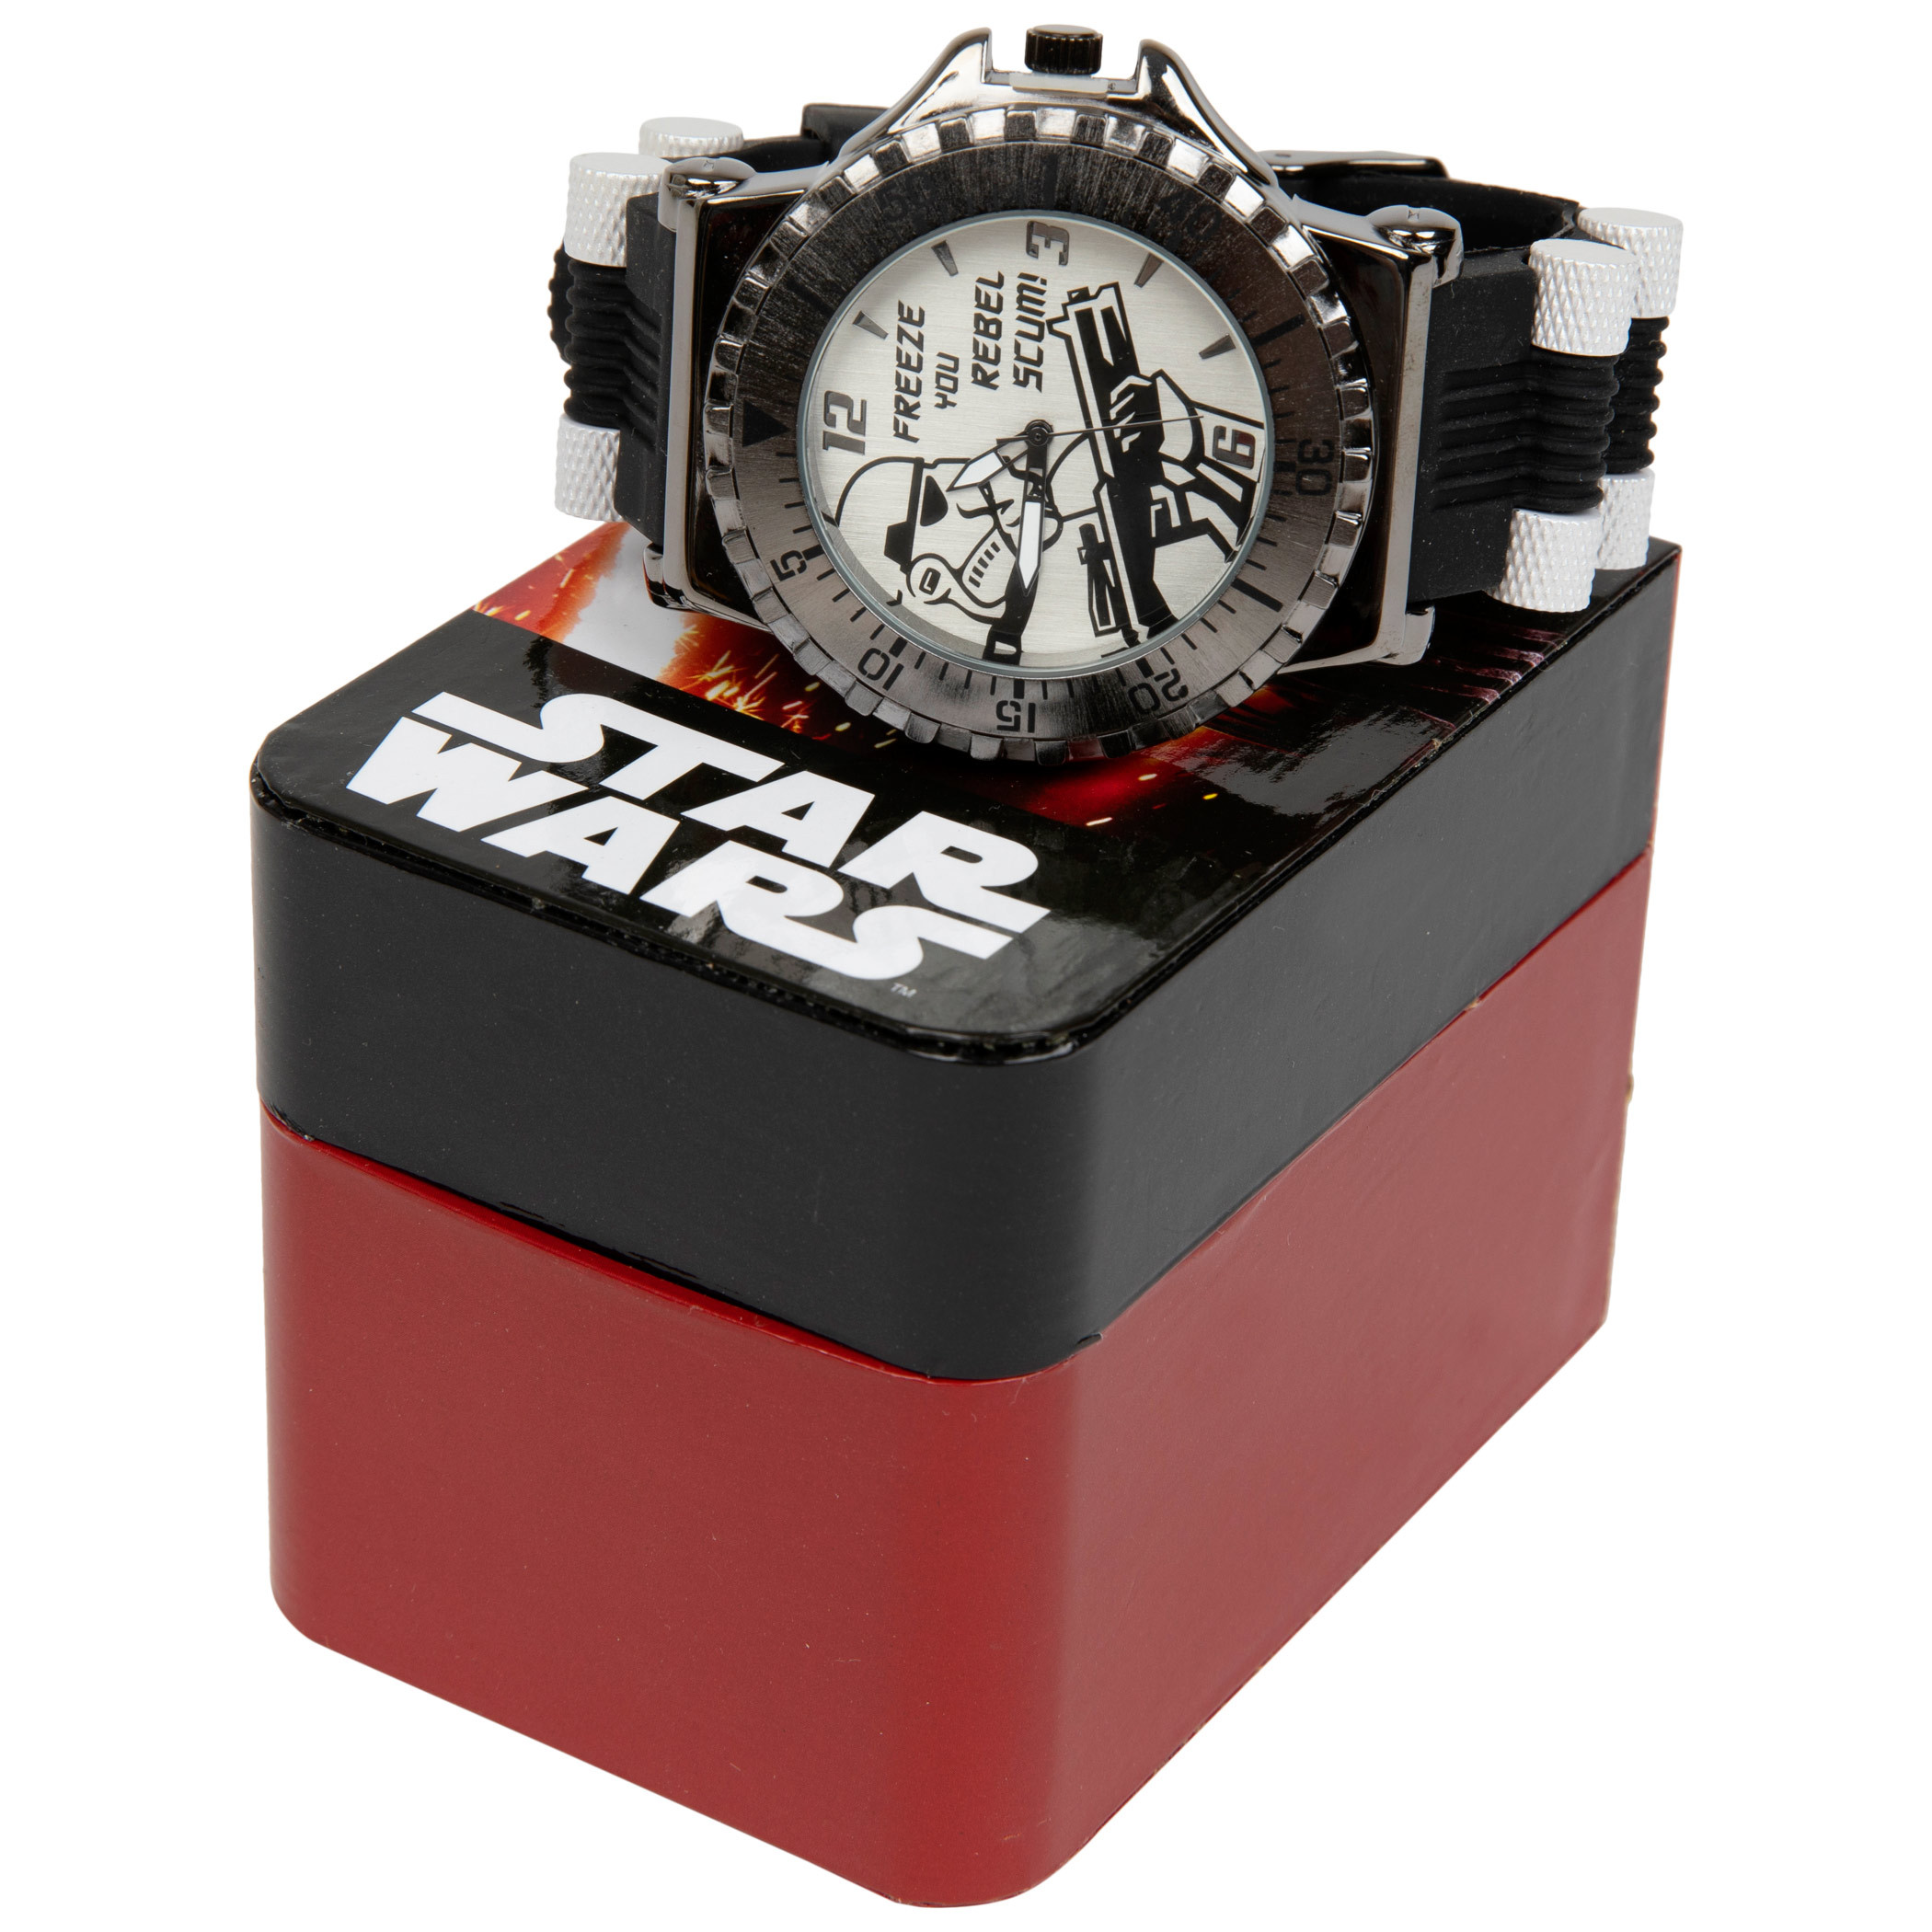 Star Wars Stromtrooper Analog Watch